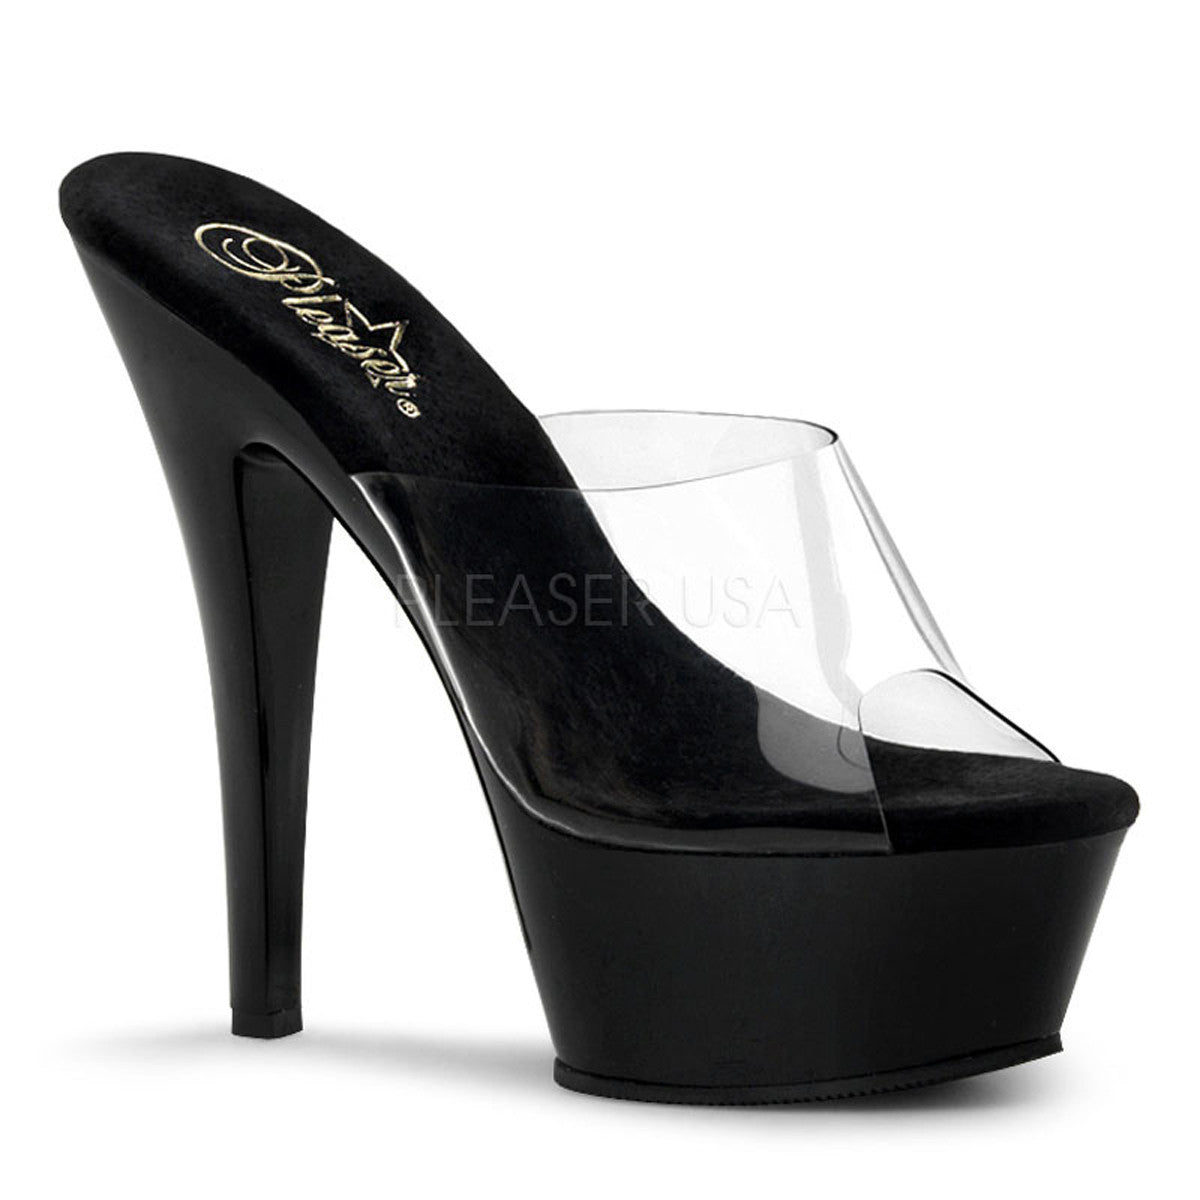 PLEASER KISS-201 Clear-Black Platform Sandals - Shoecup.com